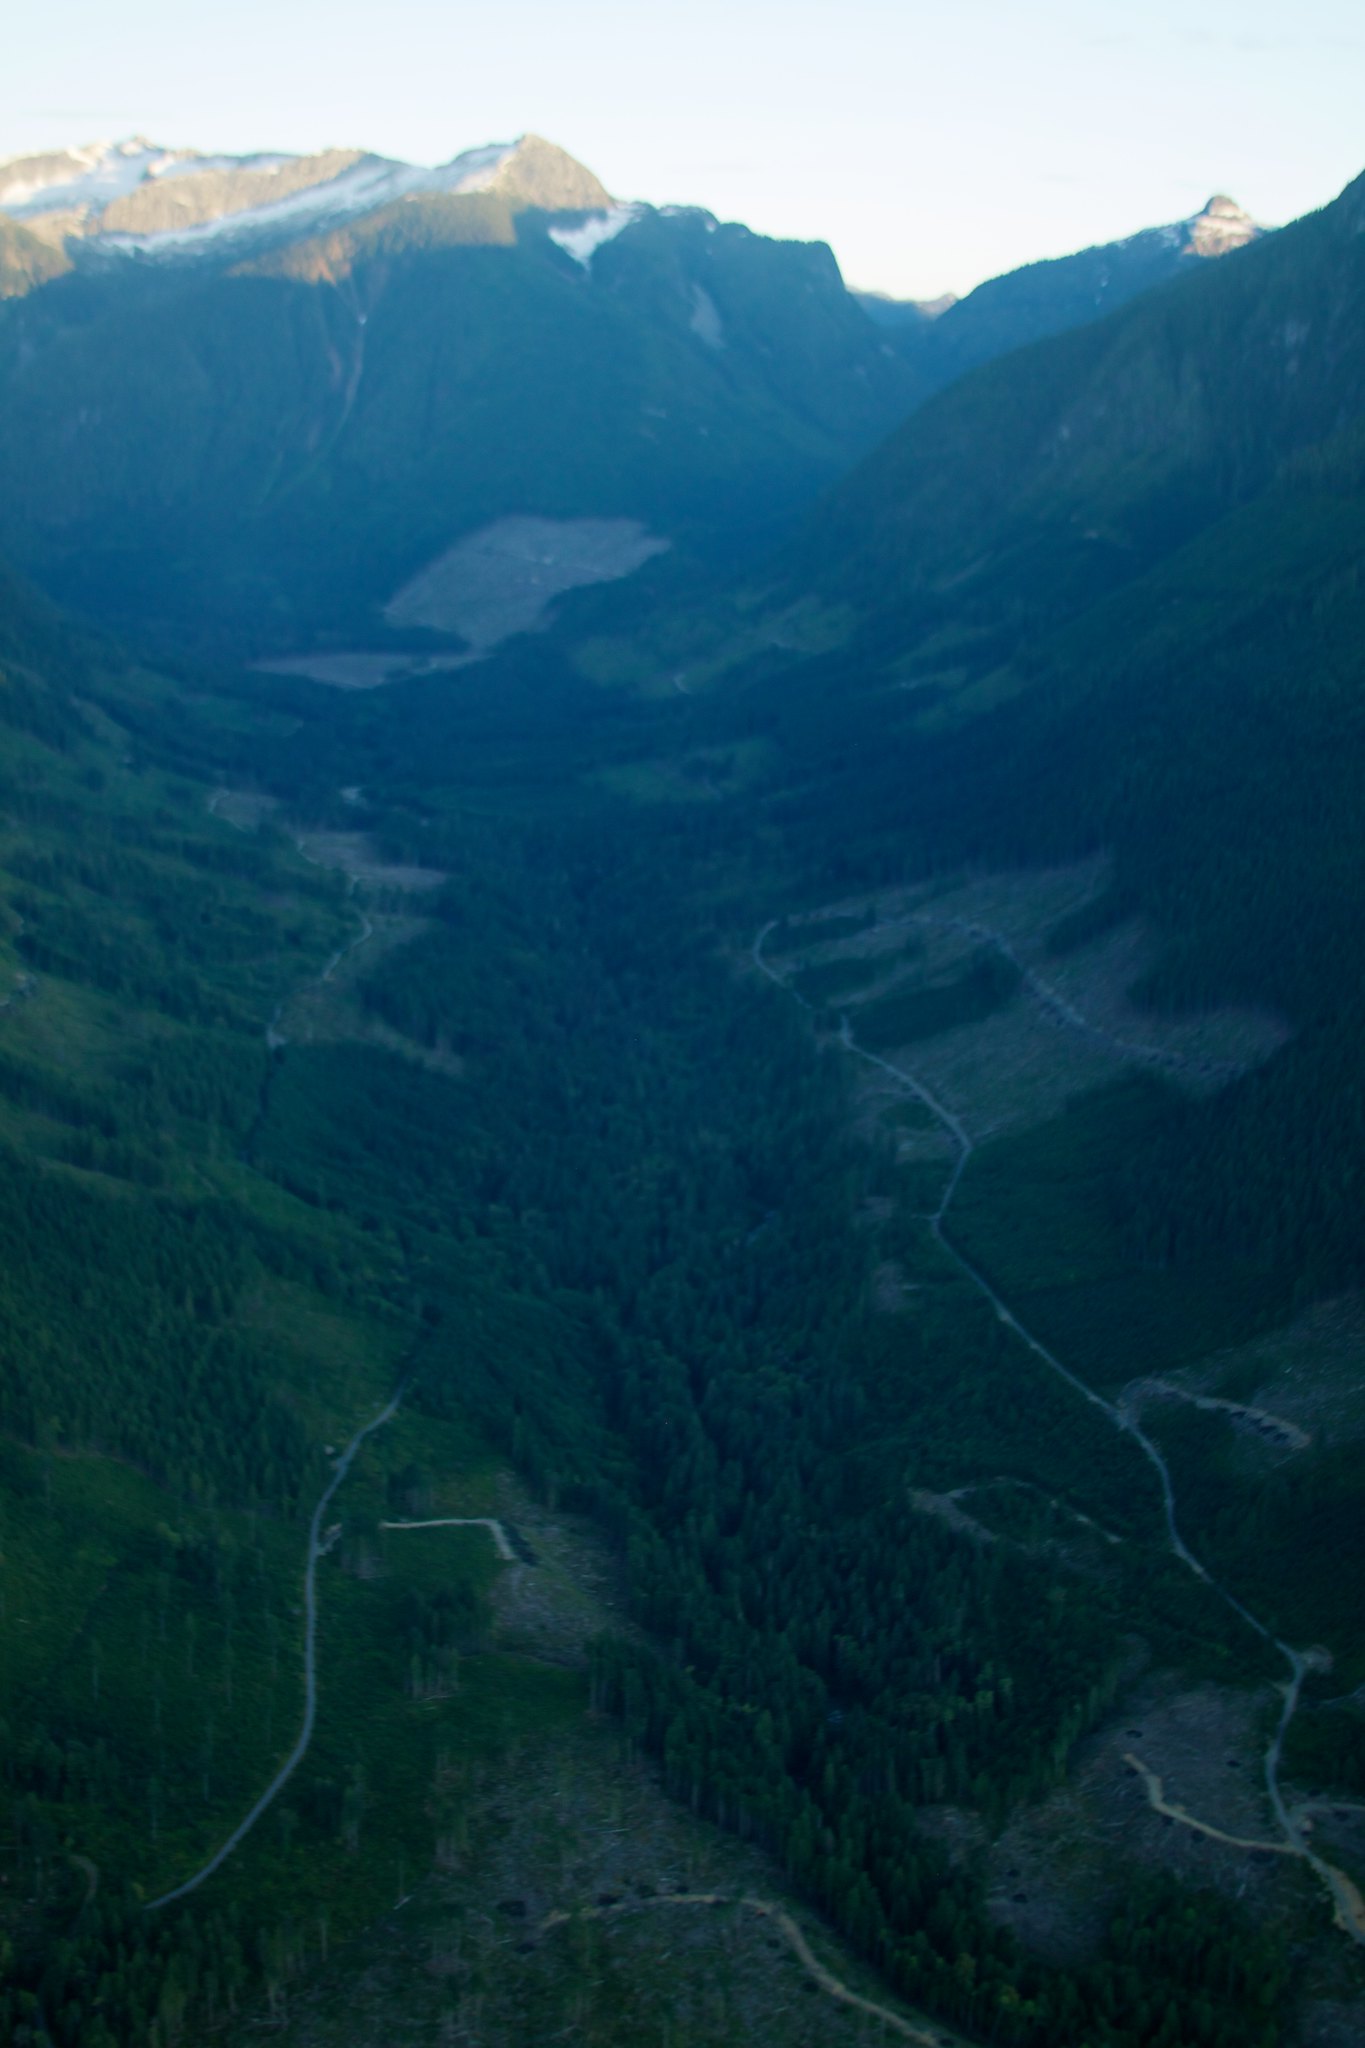 Vista aérea de las laderas de las montañas que tienen grandes secciones de árboles faltantes debido a la tala.